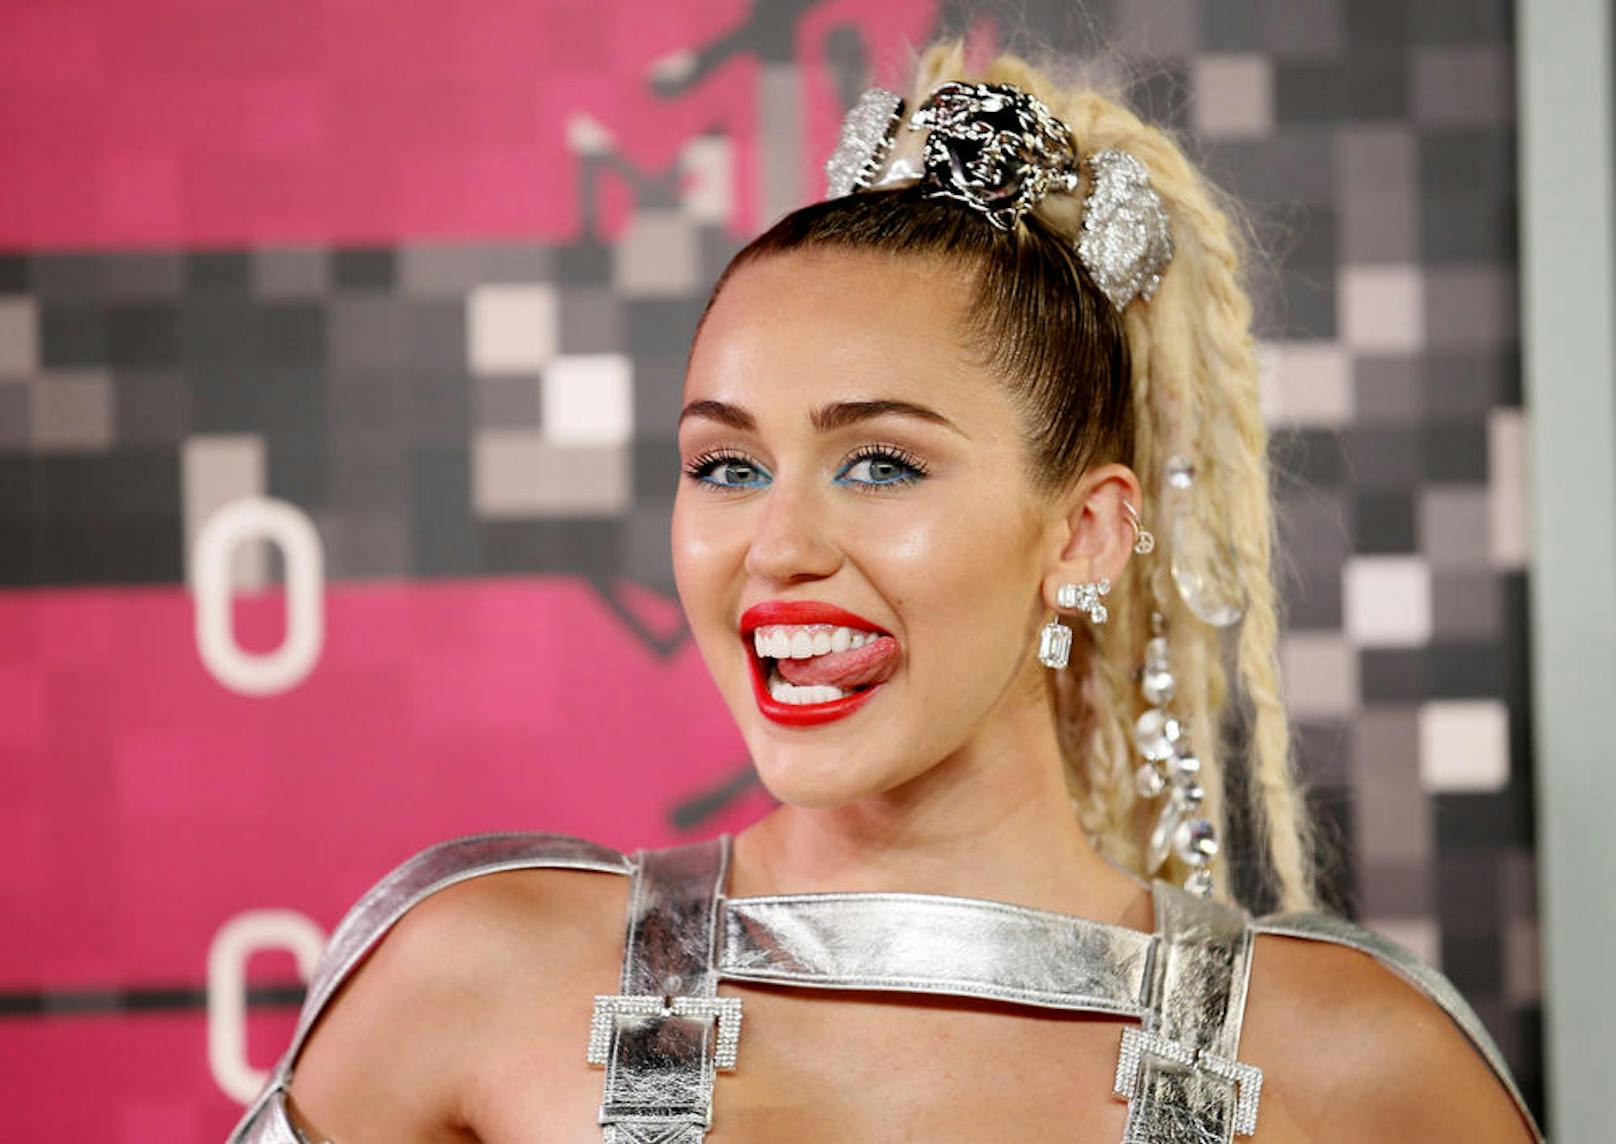 Pop-Göre <strong>Miley Cyrus</strong> schaffte mit der Disney-Serie <em>"Hannah Montana"</em> den Durchbruch, bei ihrer Rolle war ihr aber nicht immer zum Lachen zumute.